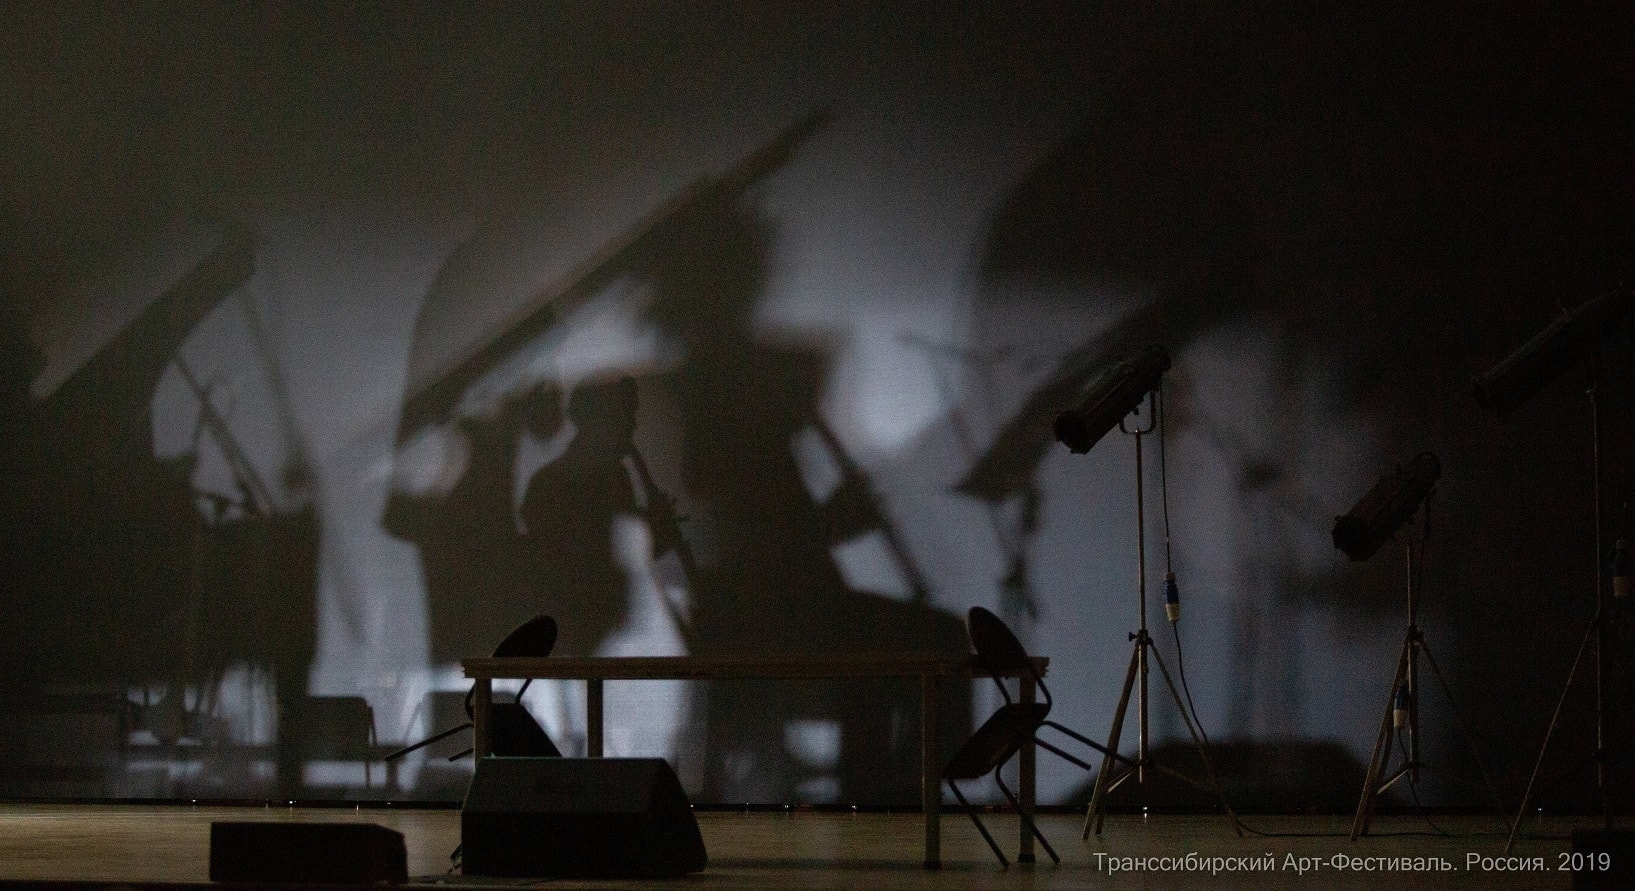 Сцена из спектакля "Черт, солдат и скрипка" в постановке Михаила Кислярова. Фото - Александр Иванов